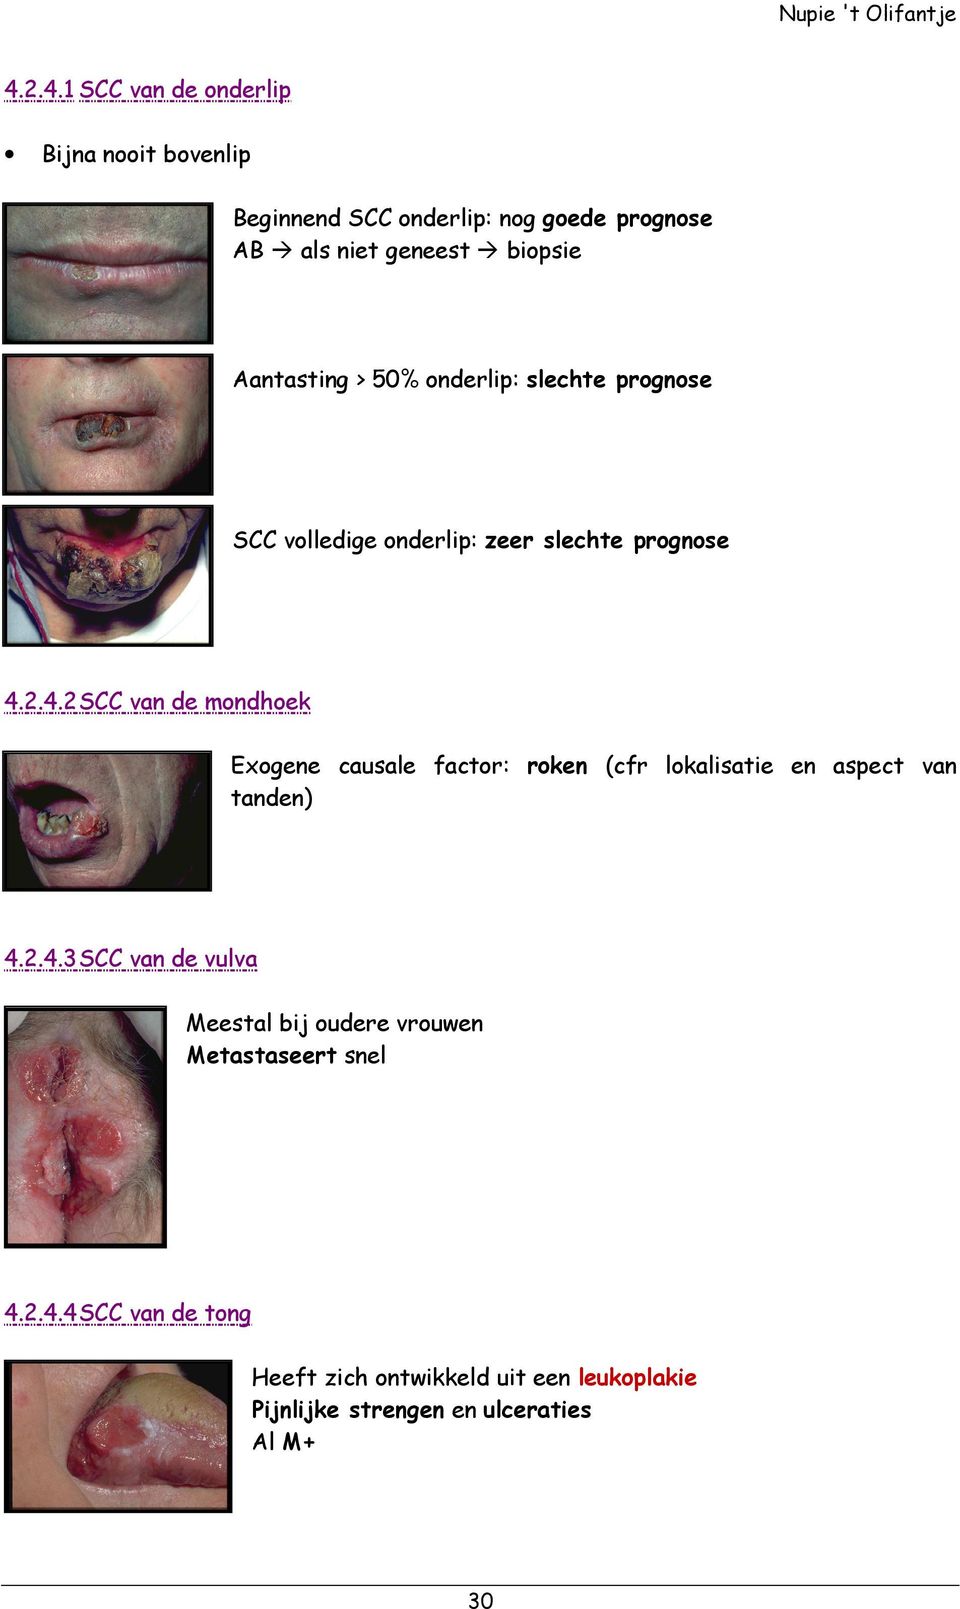 2.4.2 SCC van de mondhoek Exogene causale factor: roken (cfr lokalisatie en aspect van tanden) 4.2.4.3 SCC van de vulva Meestal bij oudere vrouwen Metastaseert snel 4.